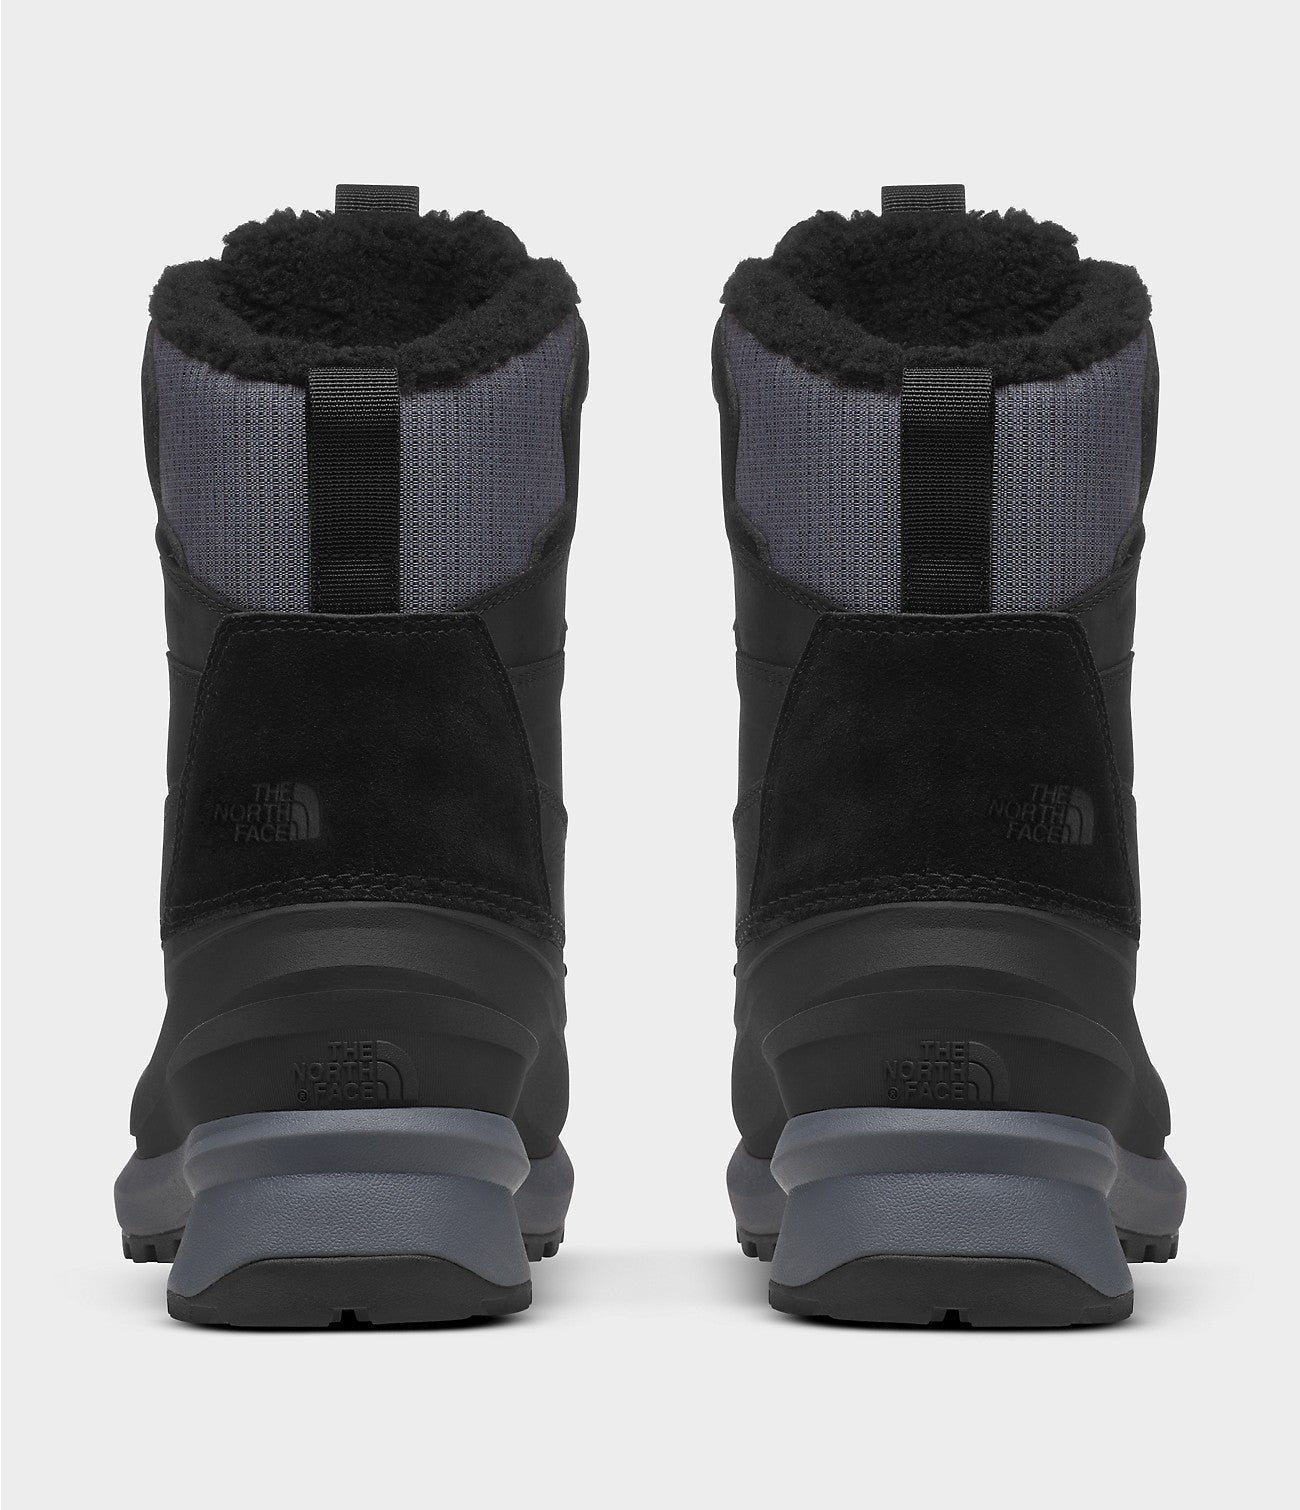 Women’s Chilkat V 400 Waterproof Boots- TNF BLACK / VANADIS GREY